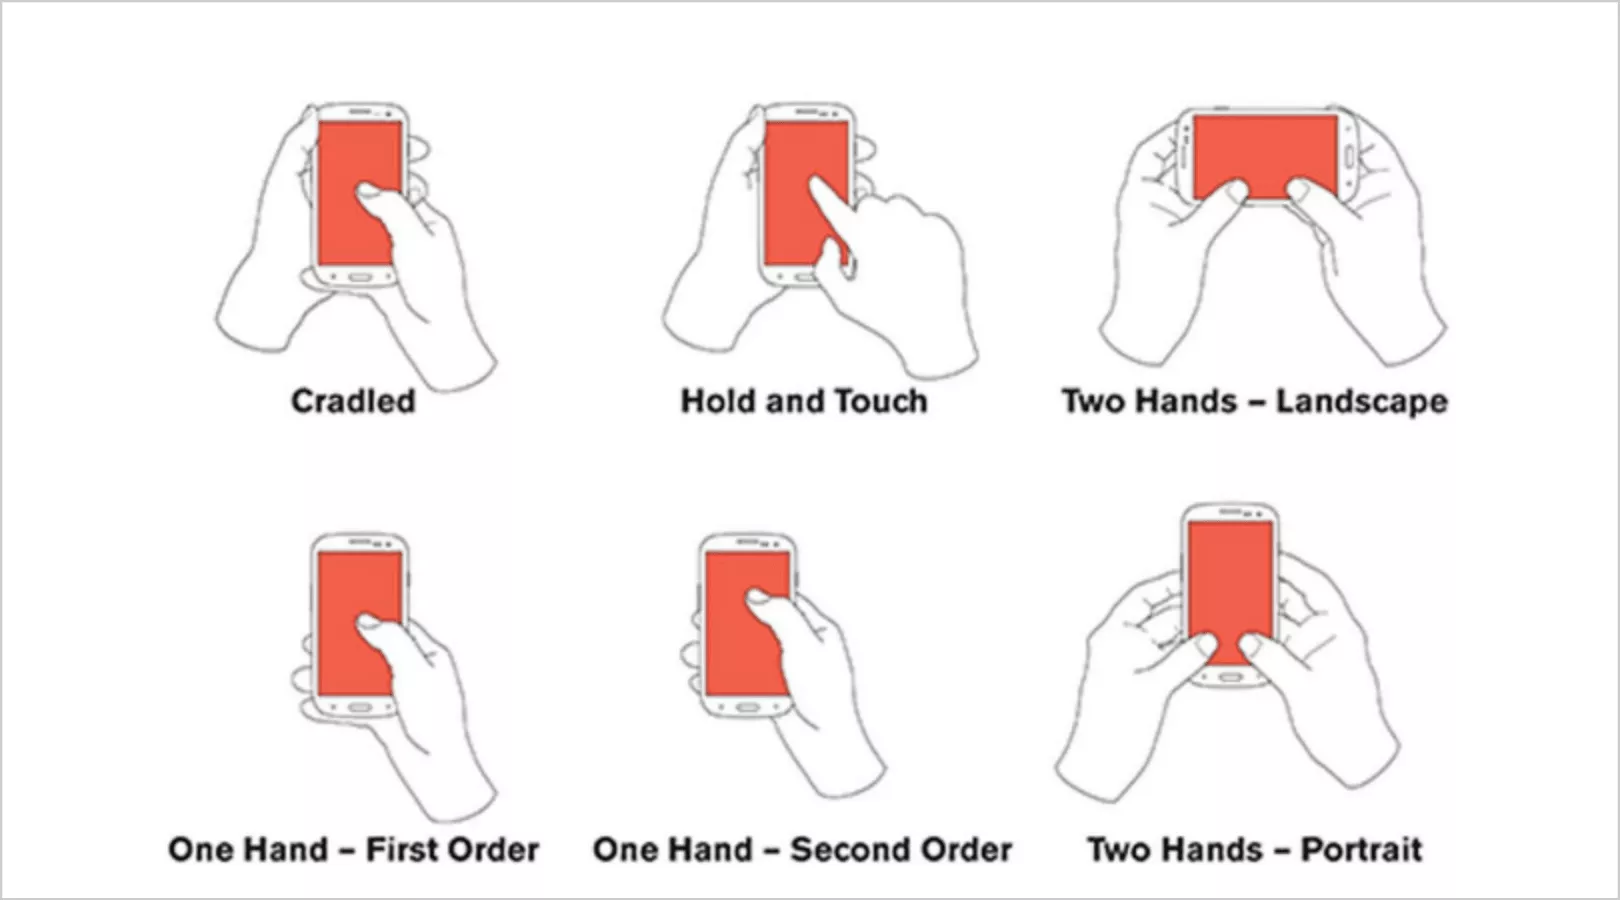 sebenarnya ada enam cara pengguna memegang ponsel mereka